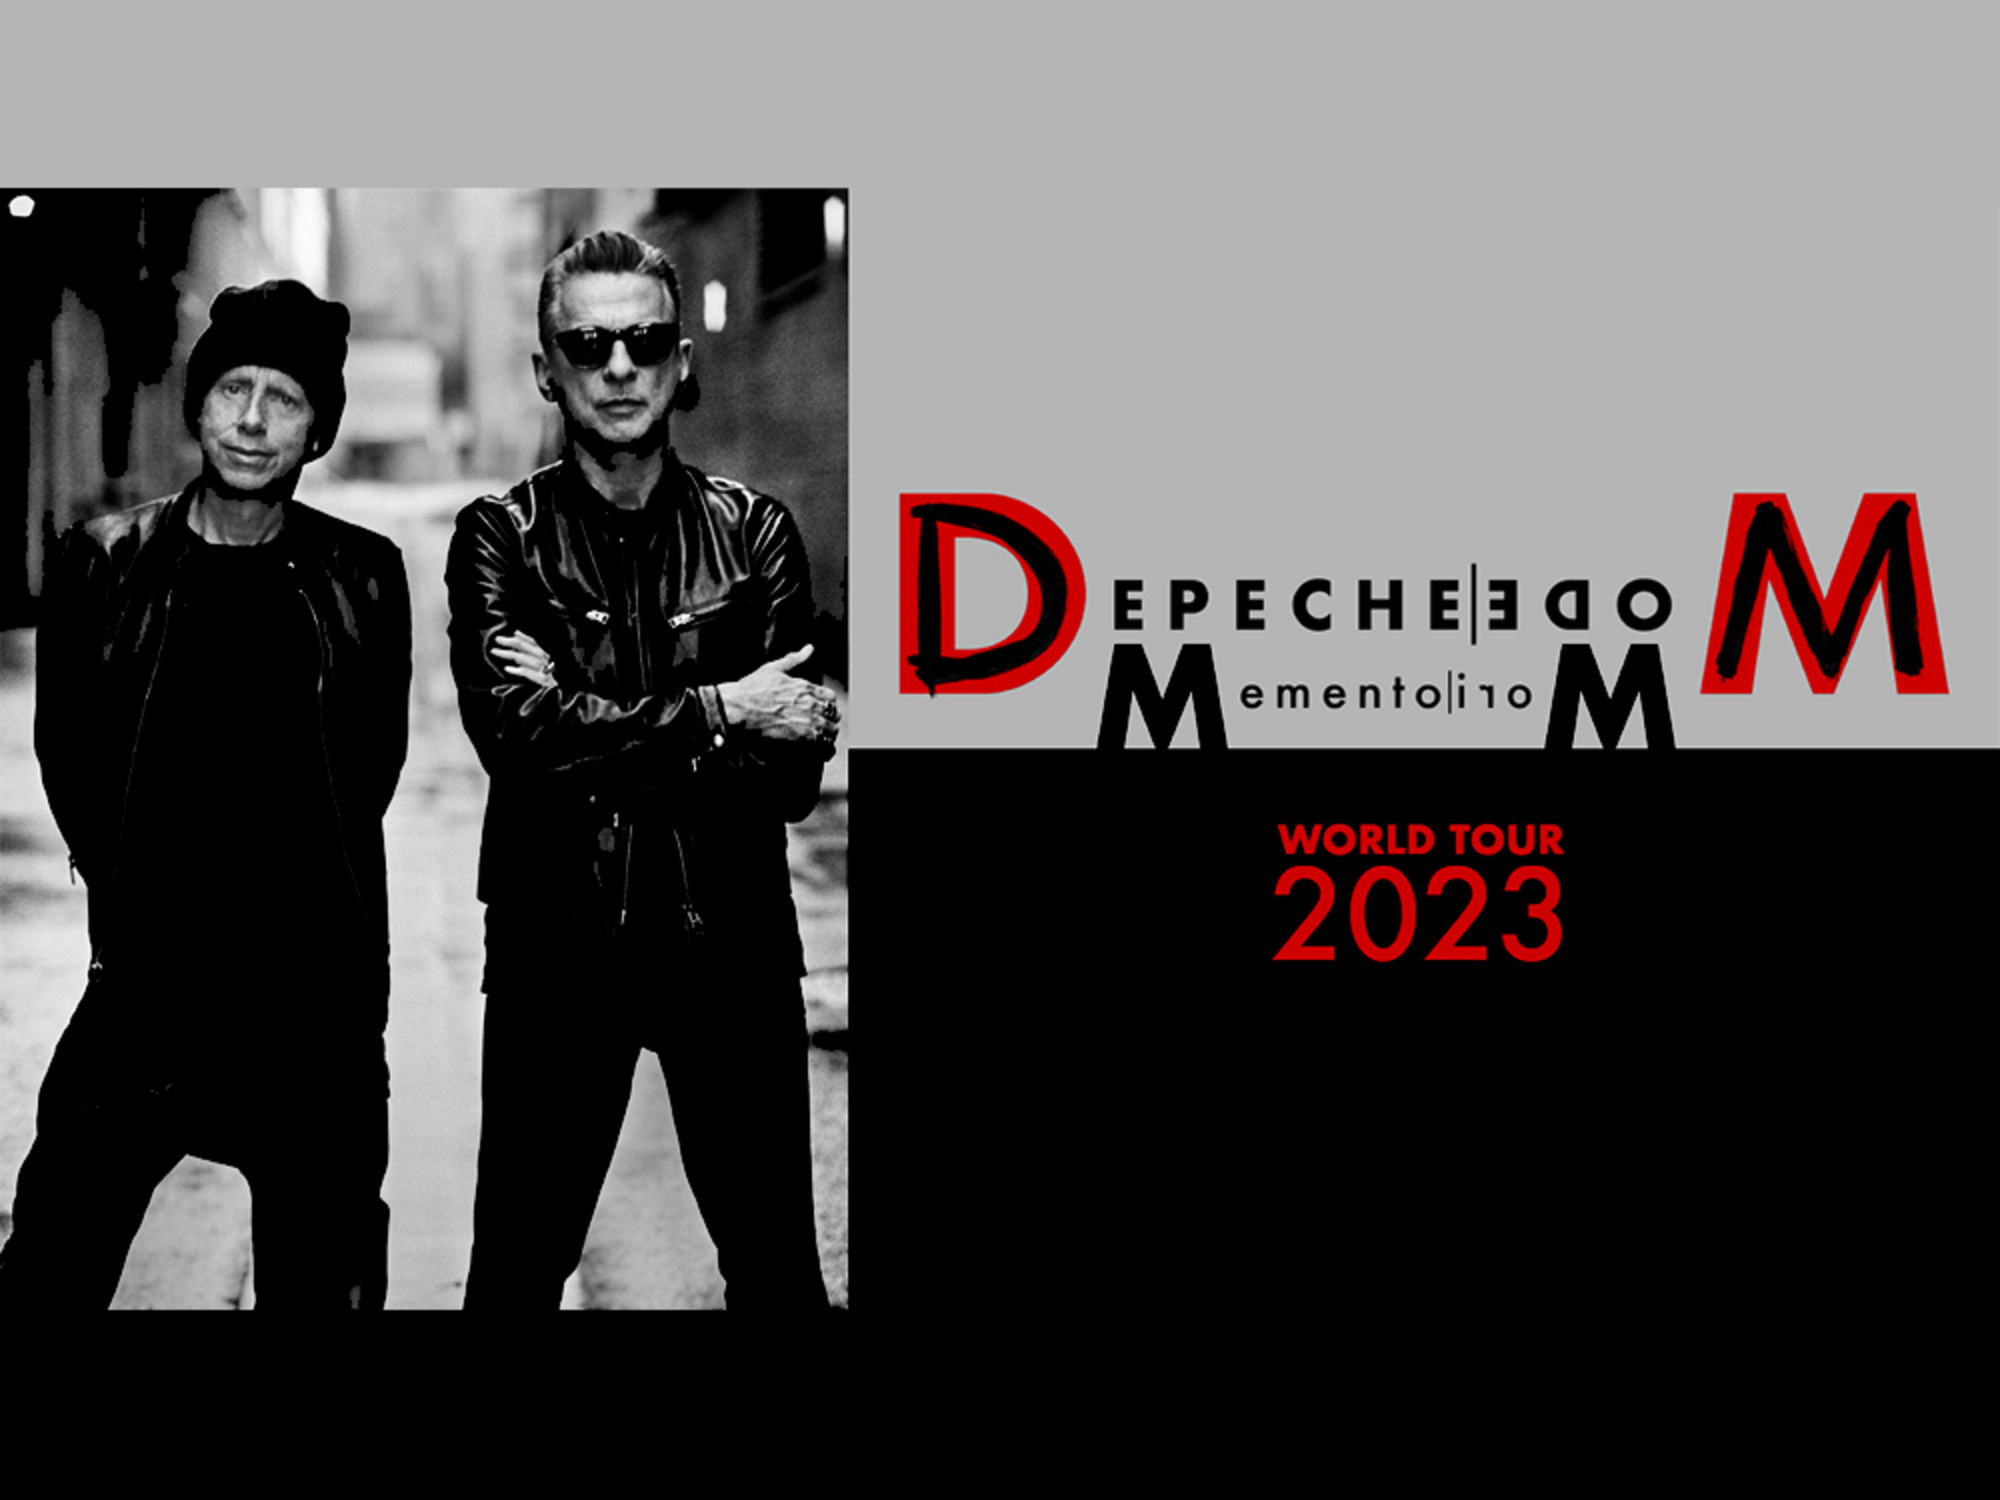 depeche mode tour video 2023